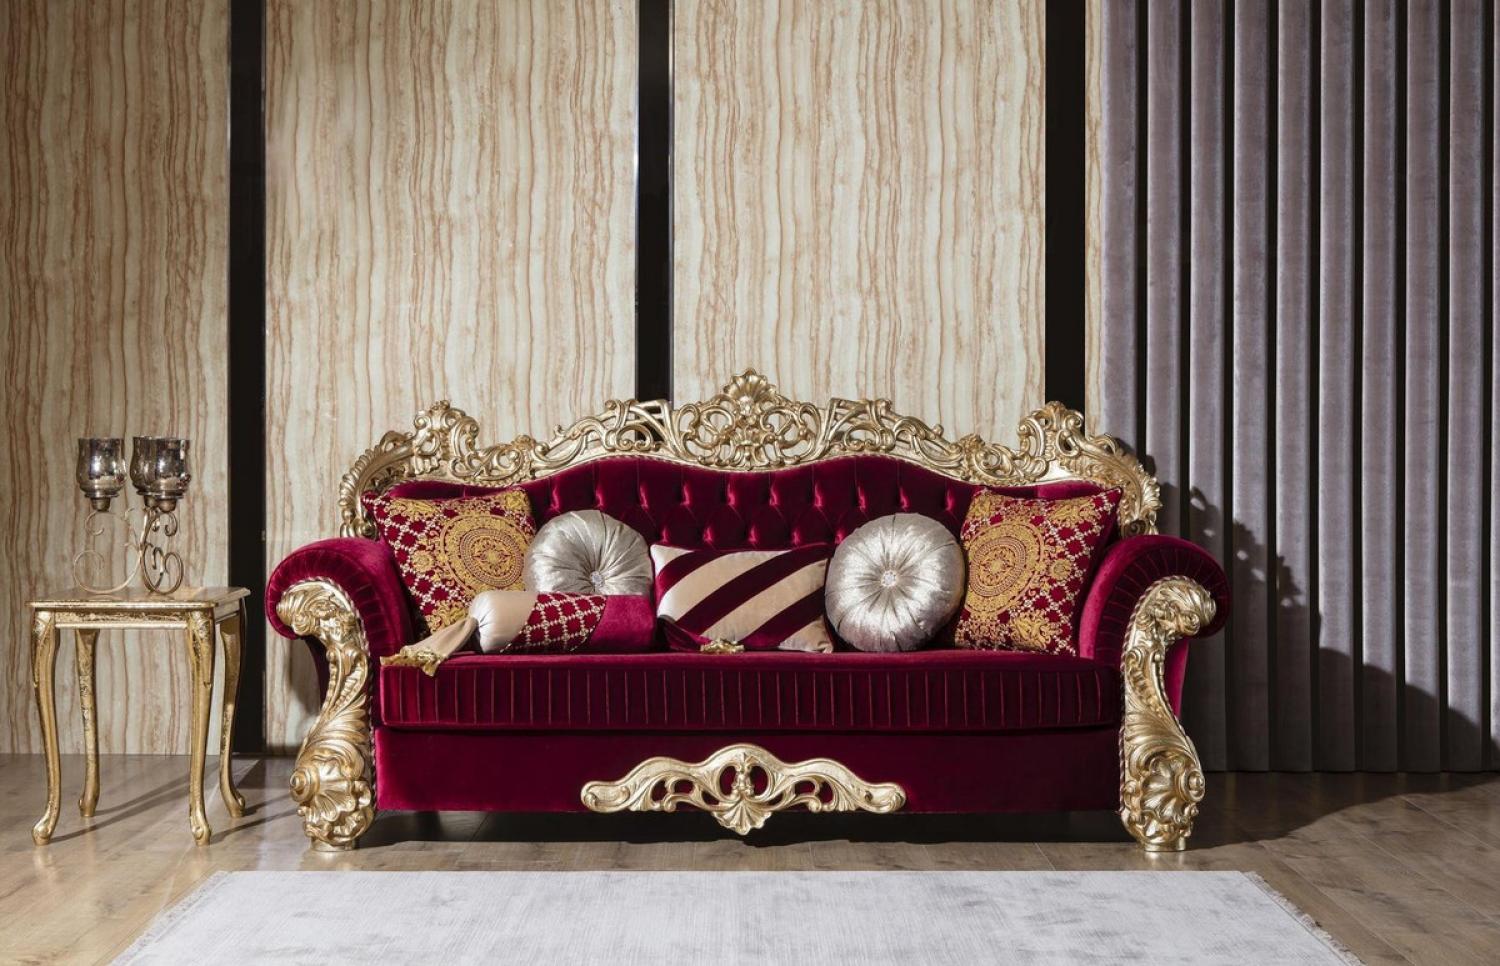 Casa Padrino Luxus Barock Sofa Bordeauxrot / Gold 244 x 95 x H. 123 cm - Prunkvolles Wohnzimmer Sofa mit dekorativen Kissen - Barock Wohnzimmer Möbel Bild 1